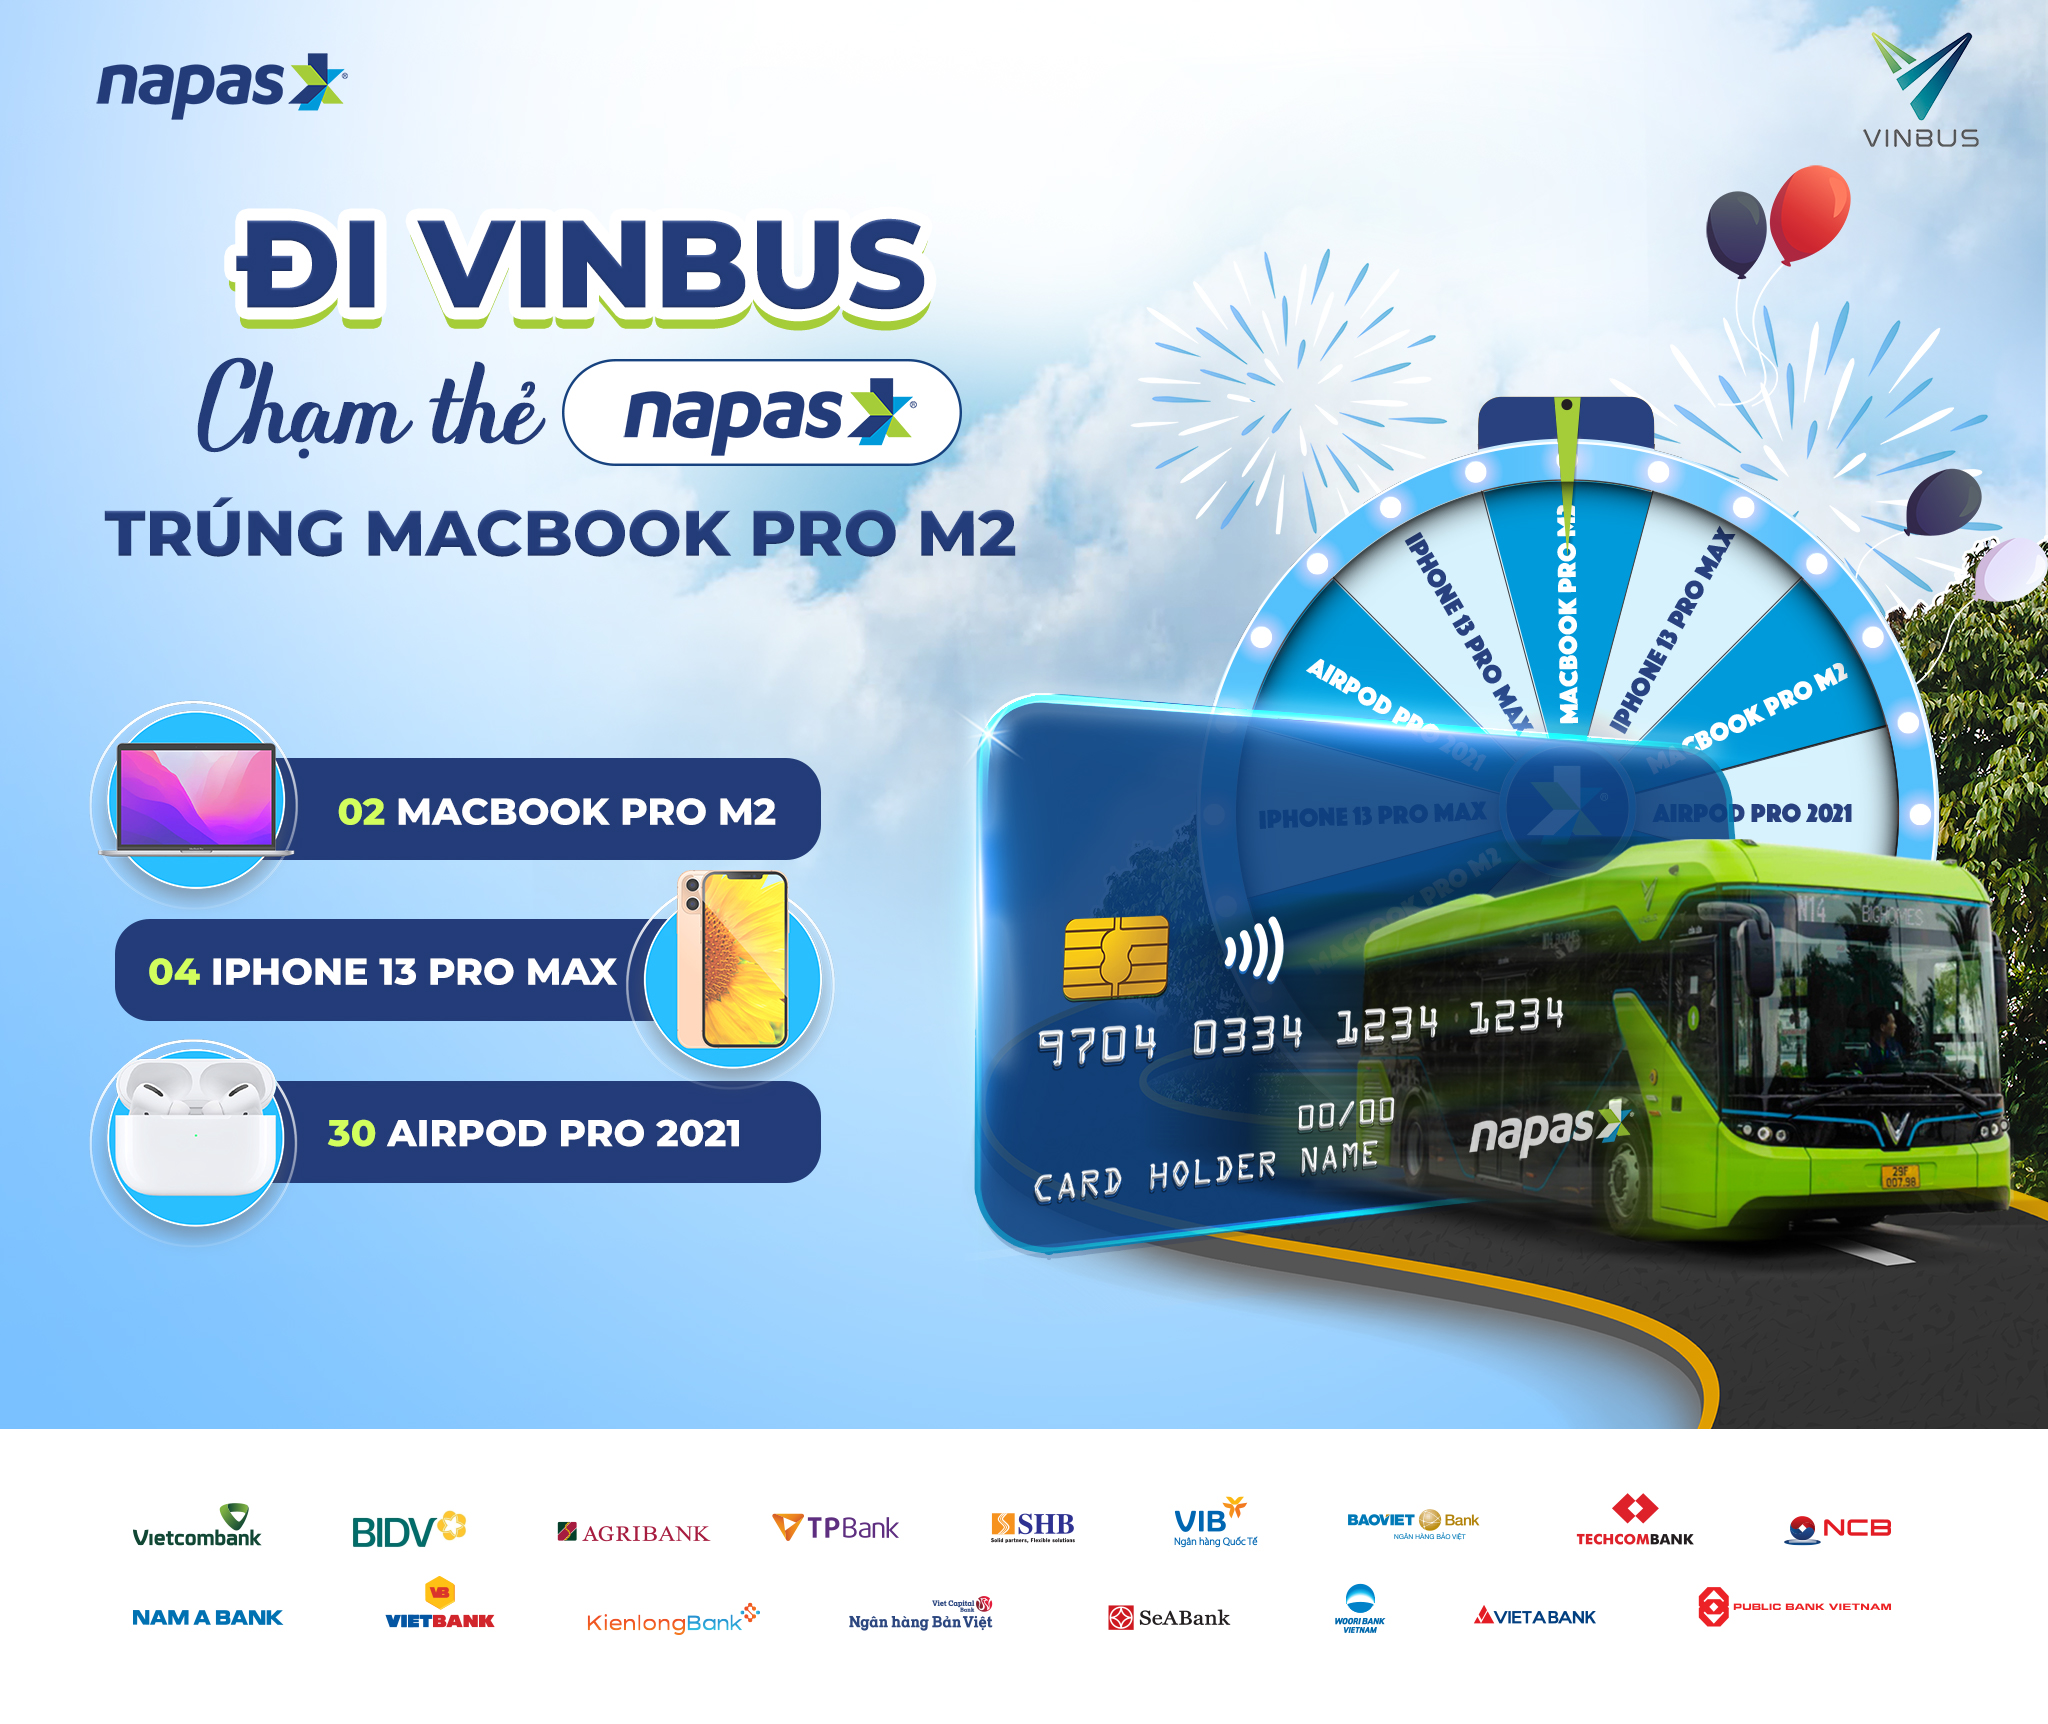 Thể lệ chương trình "Đi VinBus chạm thẻ NAPAS trúng Macbook pro M2"